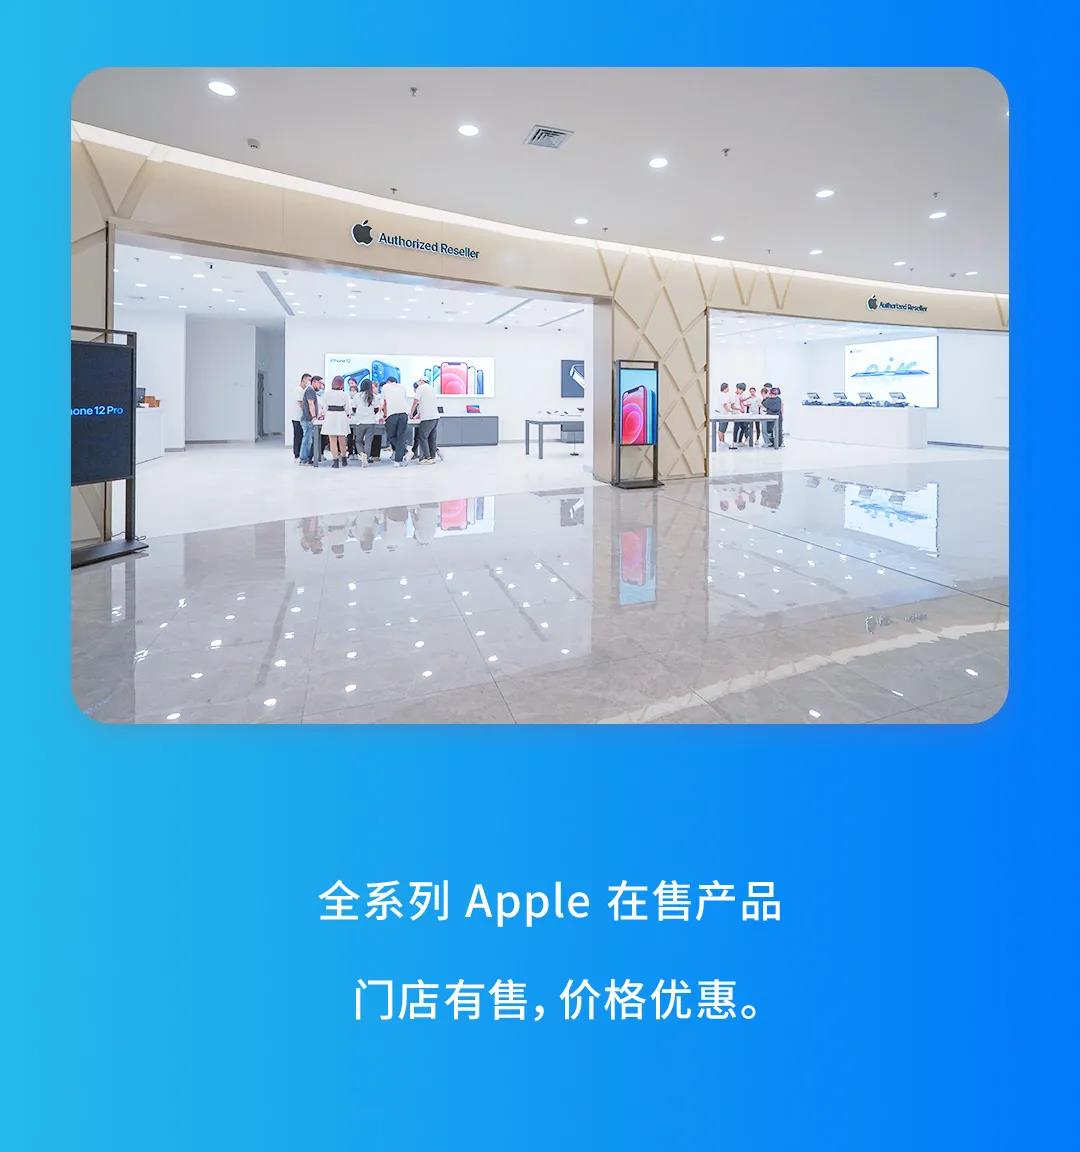 海南三亚首家 Apple 授权经销商店开业